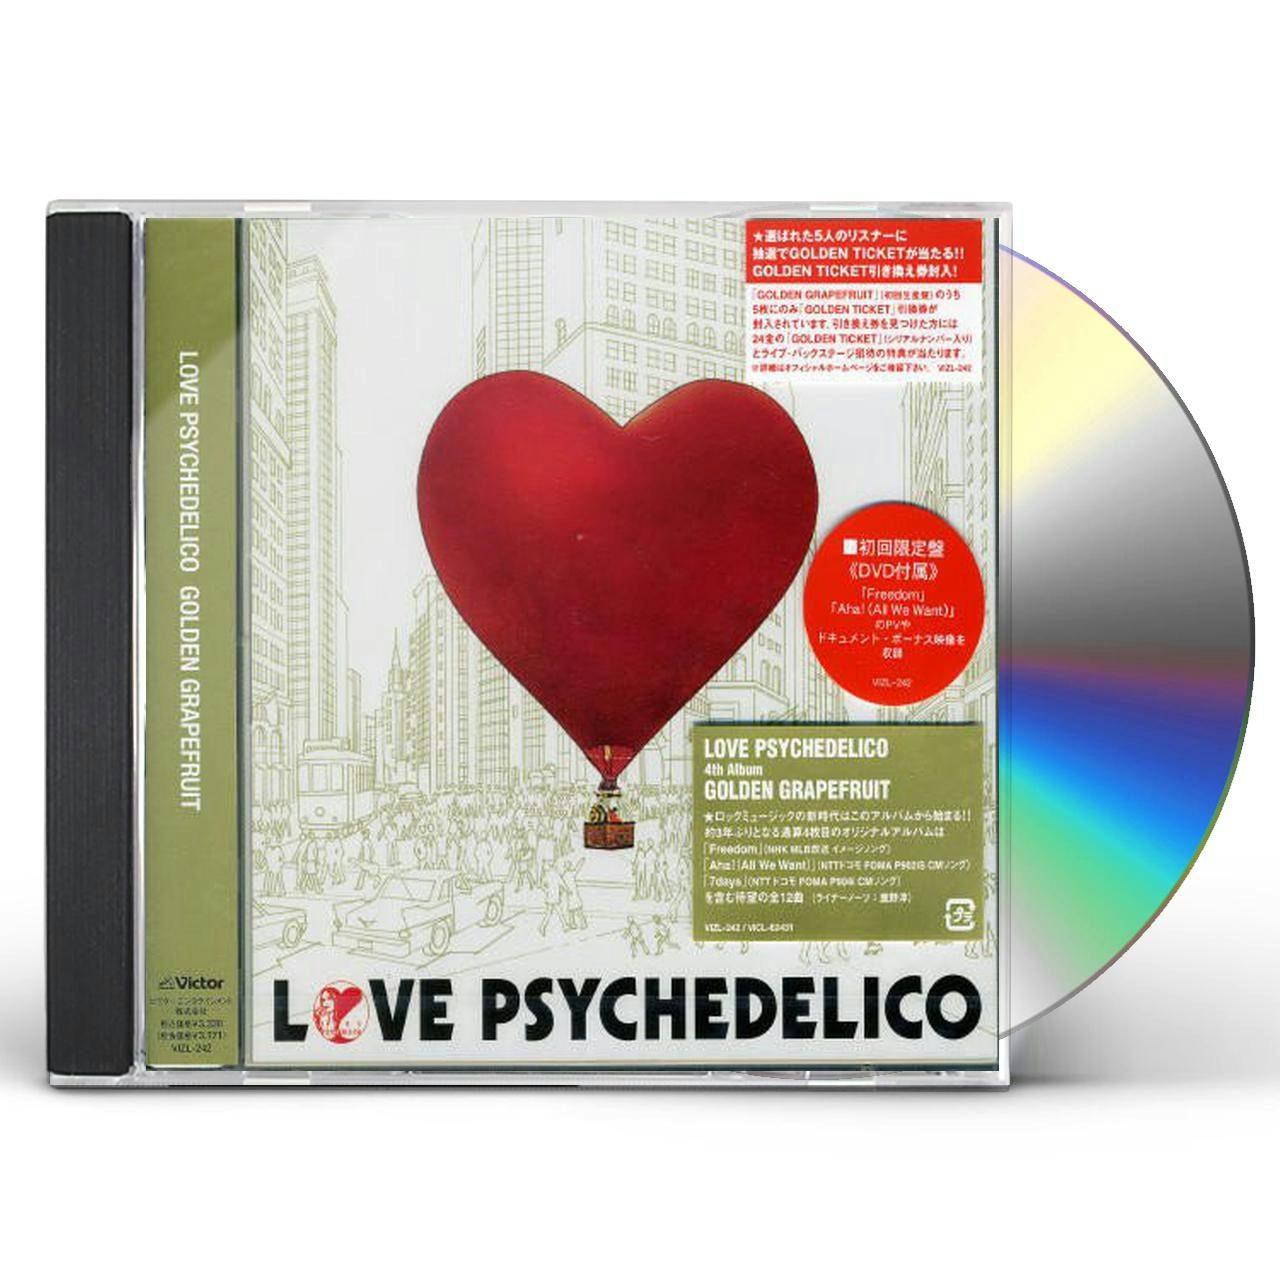 LOVE PSYCHEDELICO V4: GOLDEN GRAPEFRUIT CD